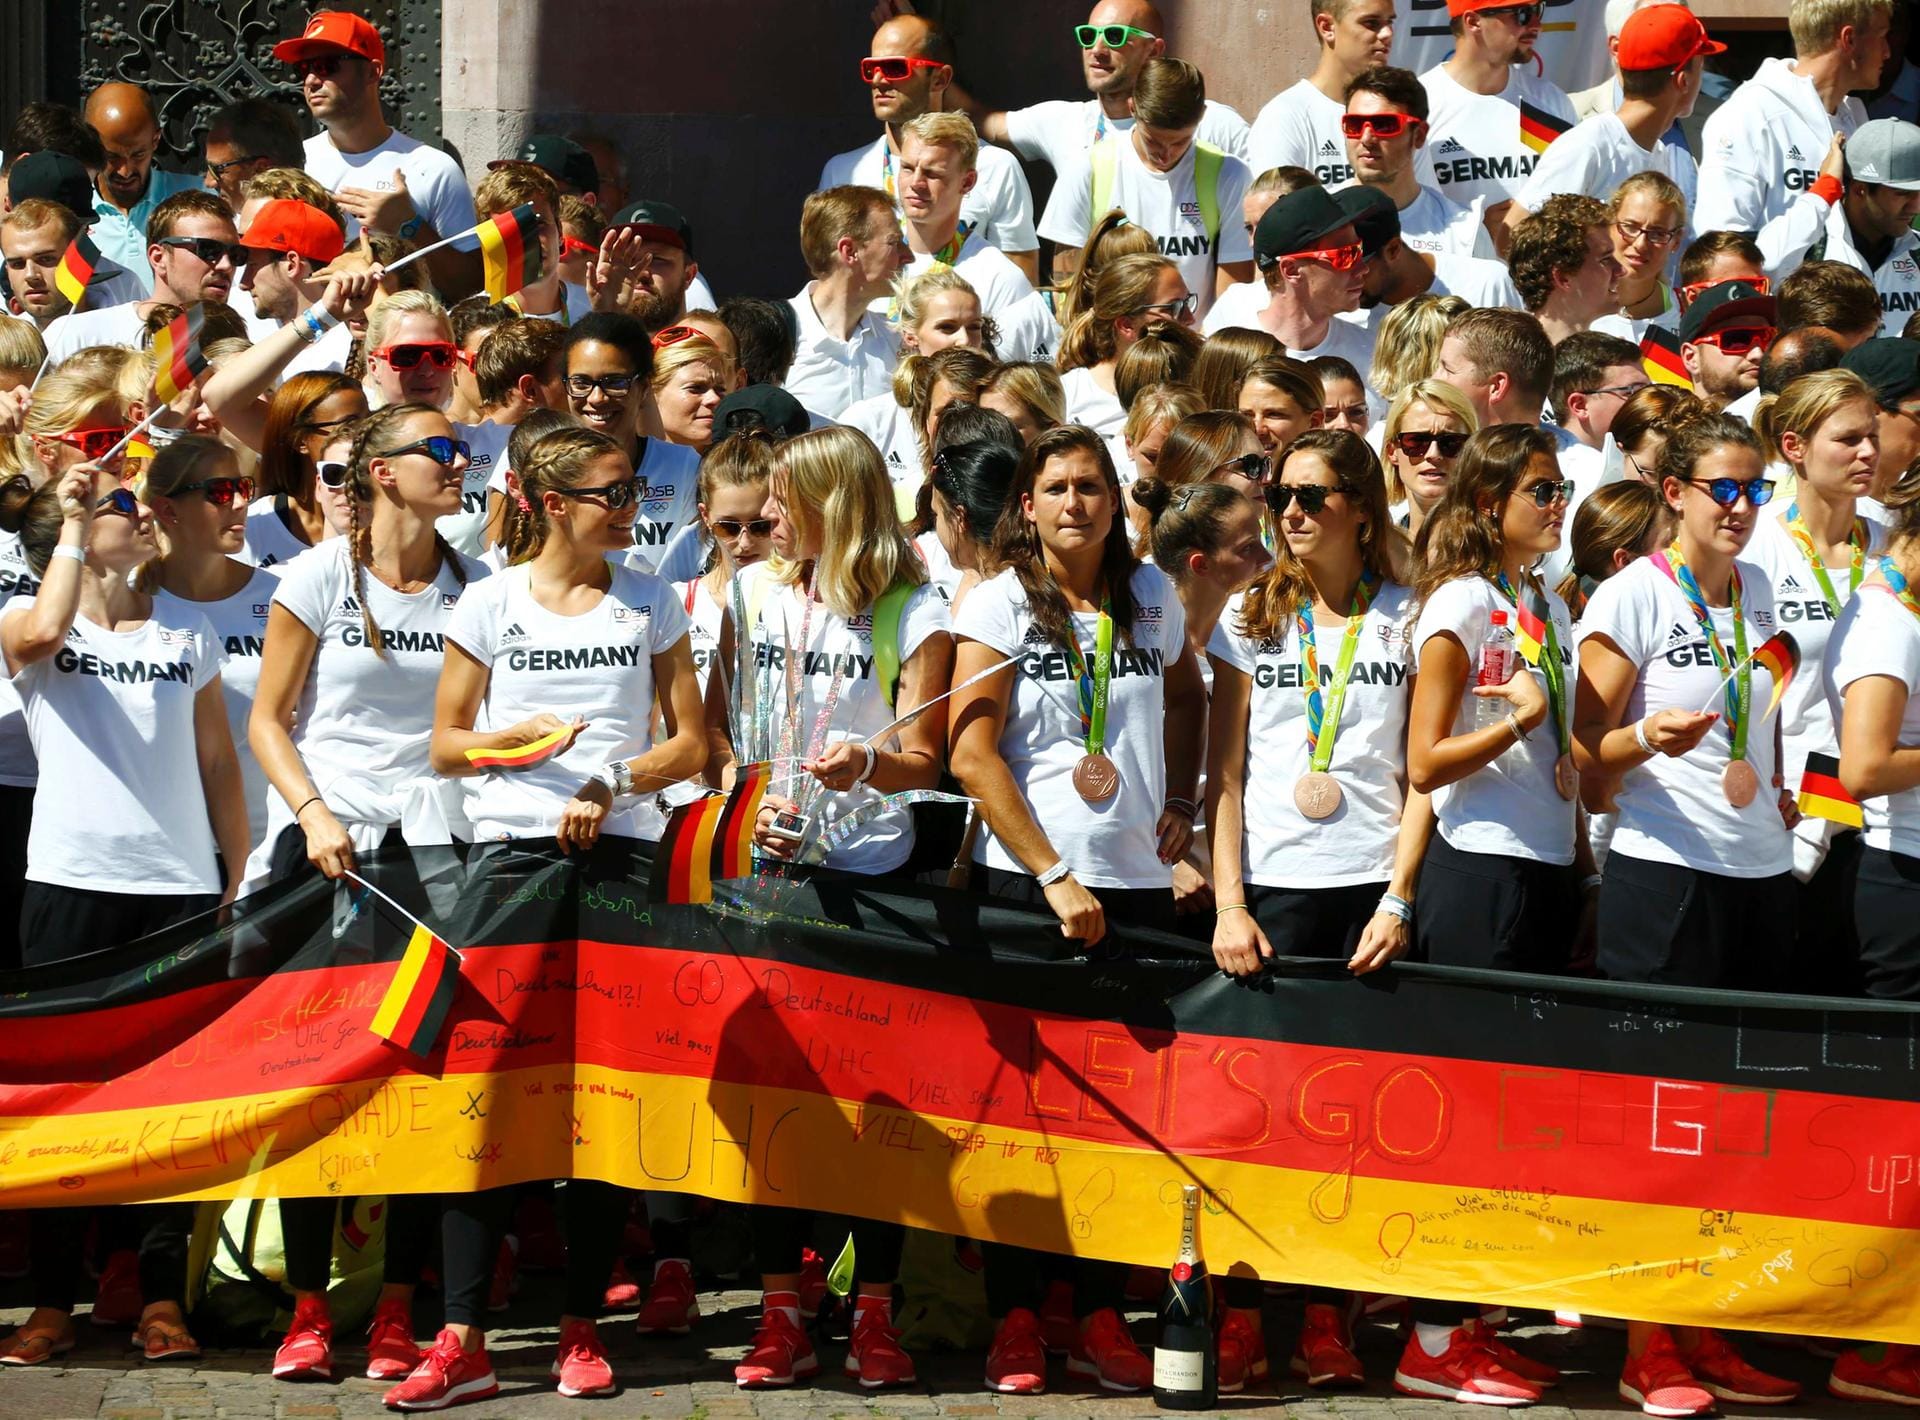 Gebahnt: Nach dem Fußmarsch kam die deutschen Olympioniken am Römer in Frankfurt an und posierten für Fotos.